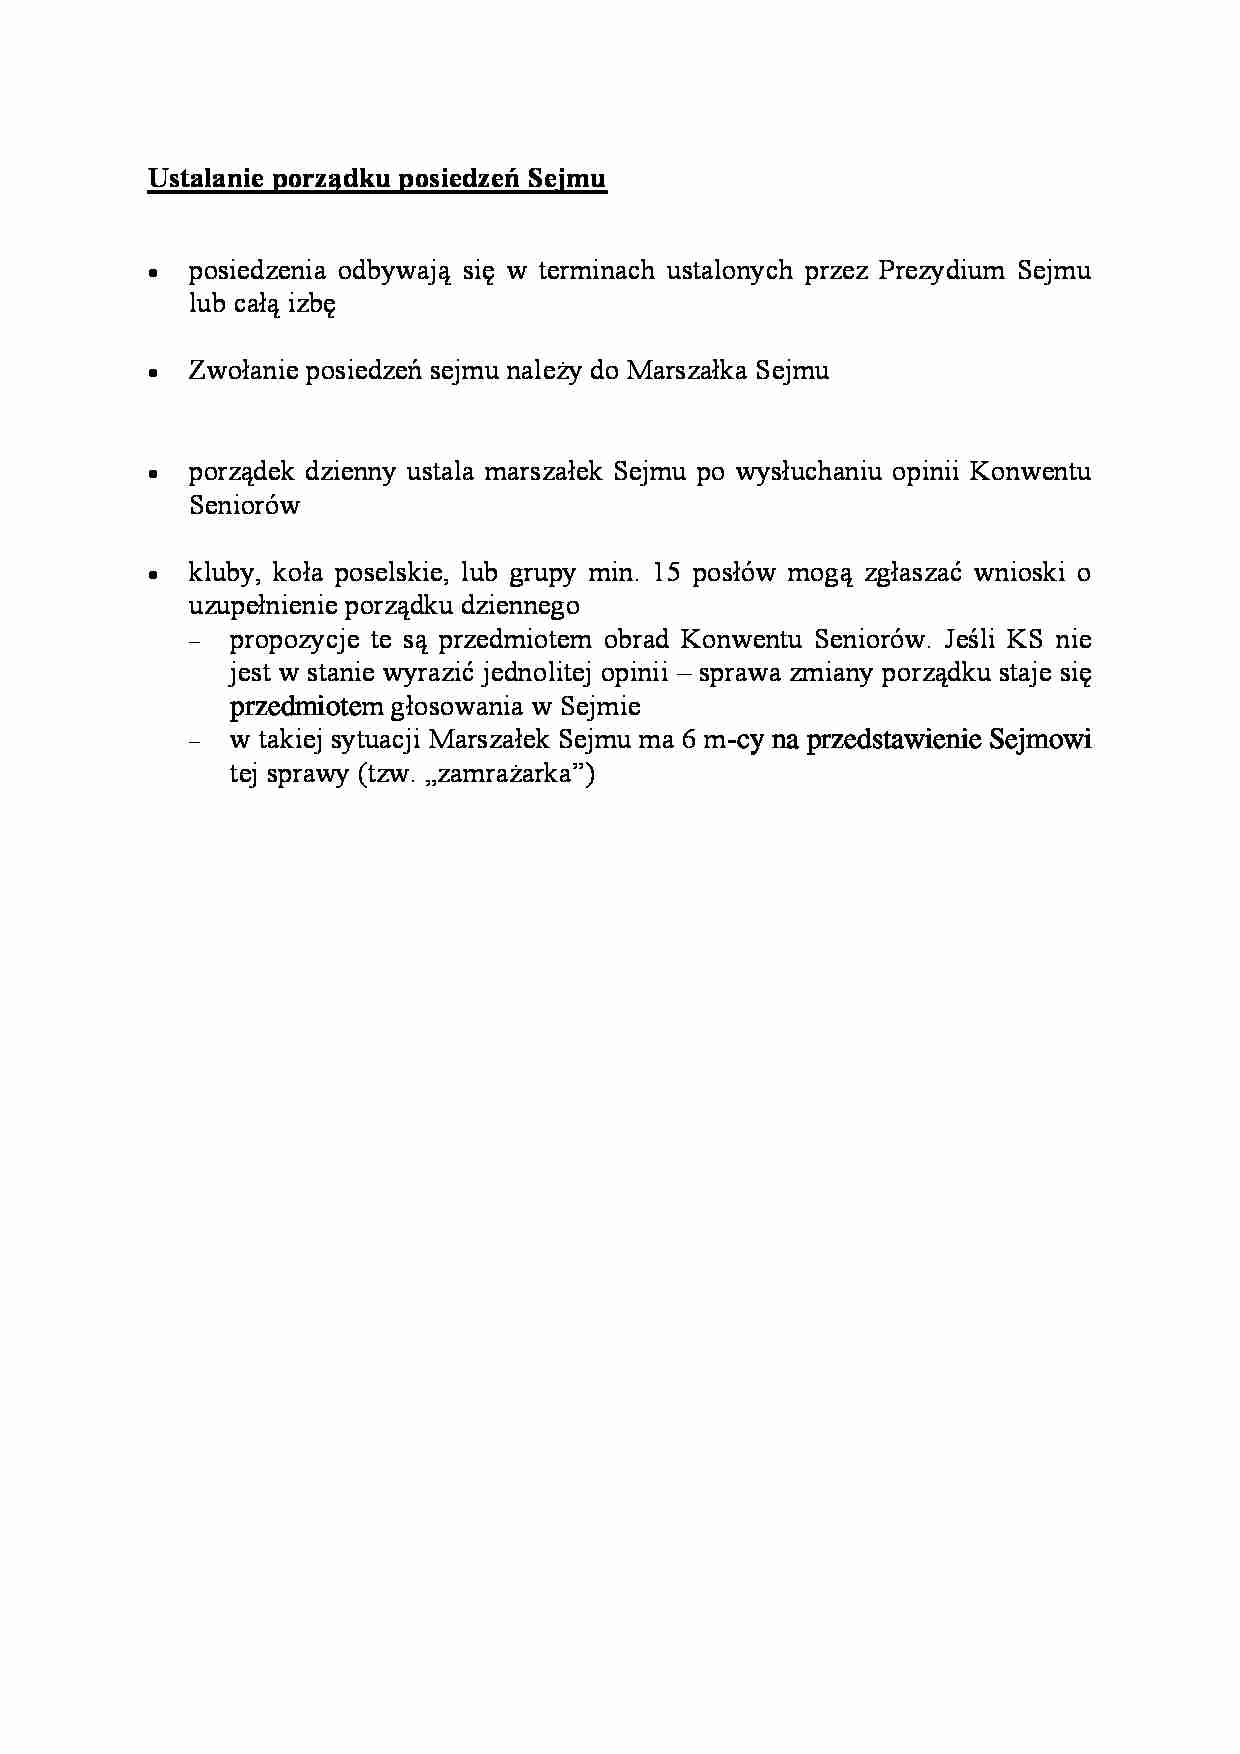 Ustalanie porządku posiedzeń Sejmu - omówienie - strona 1